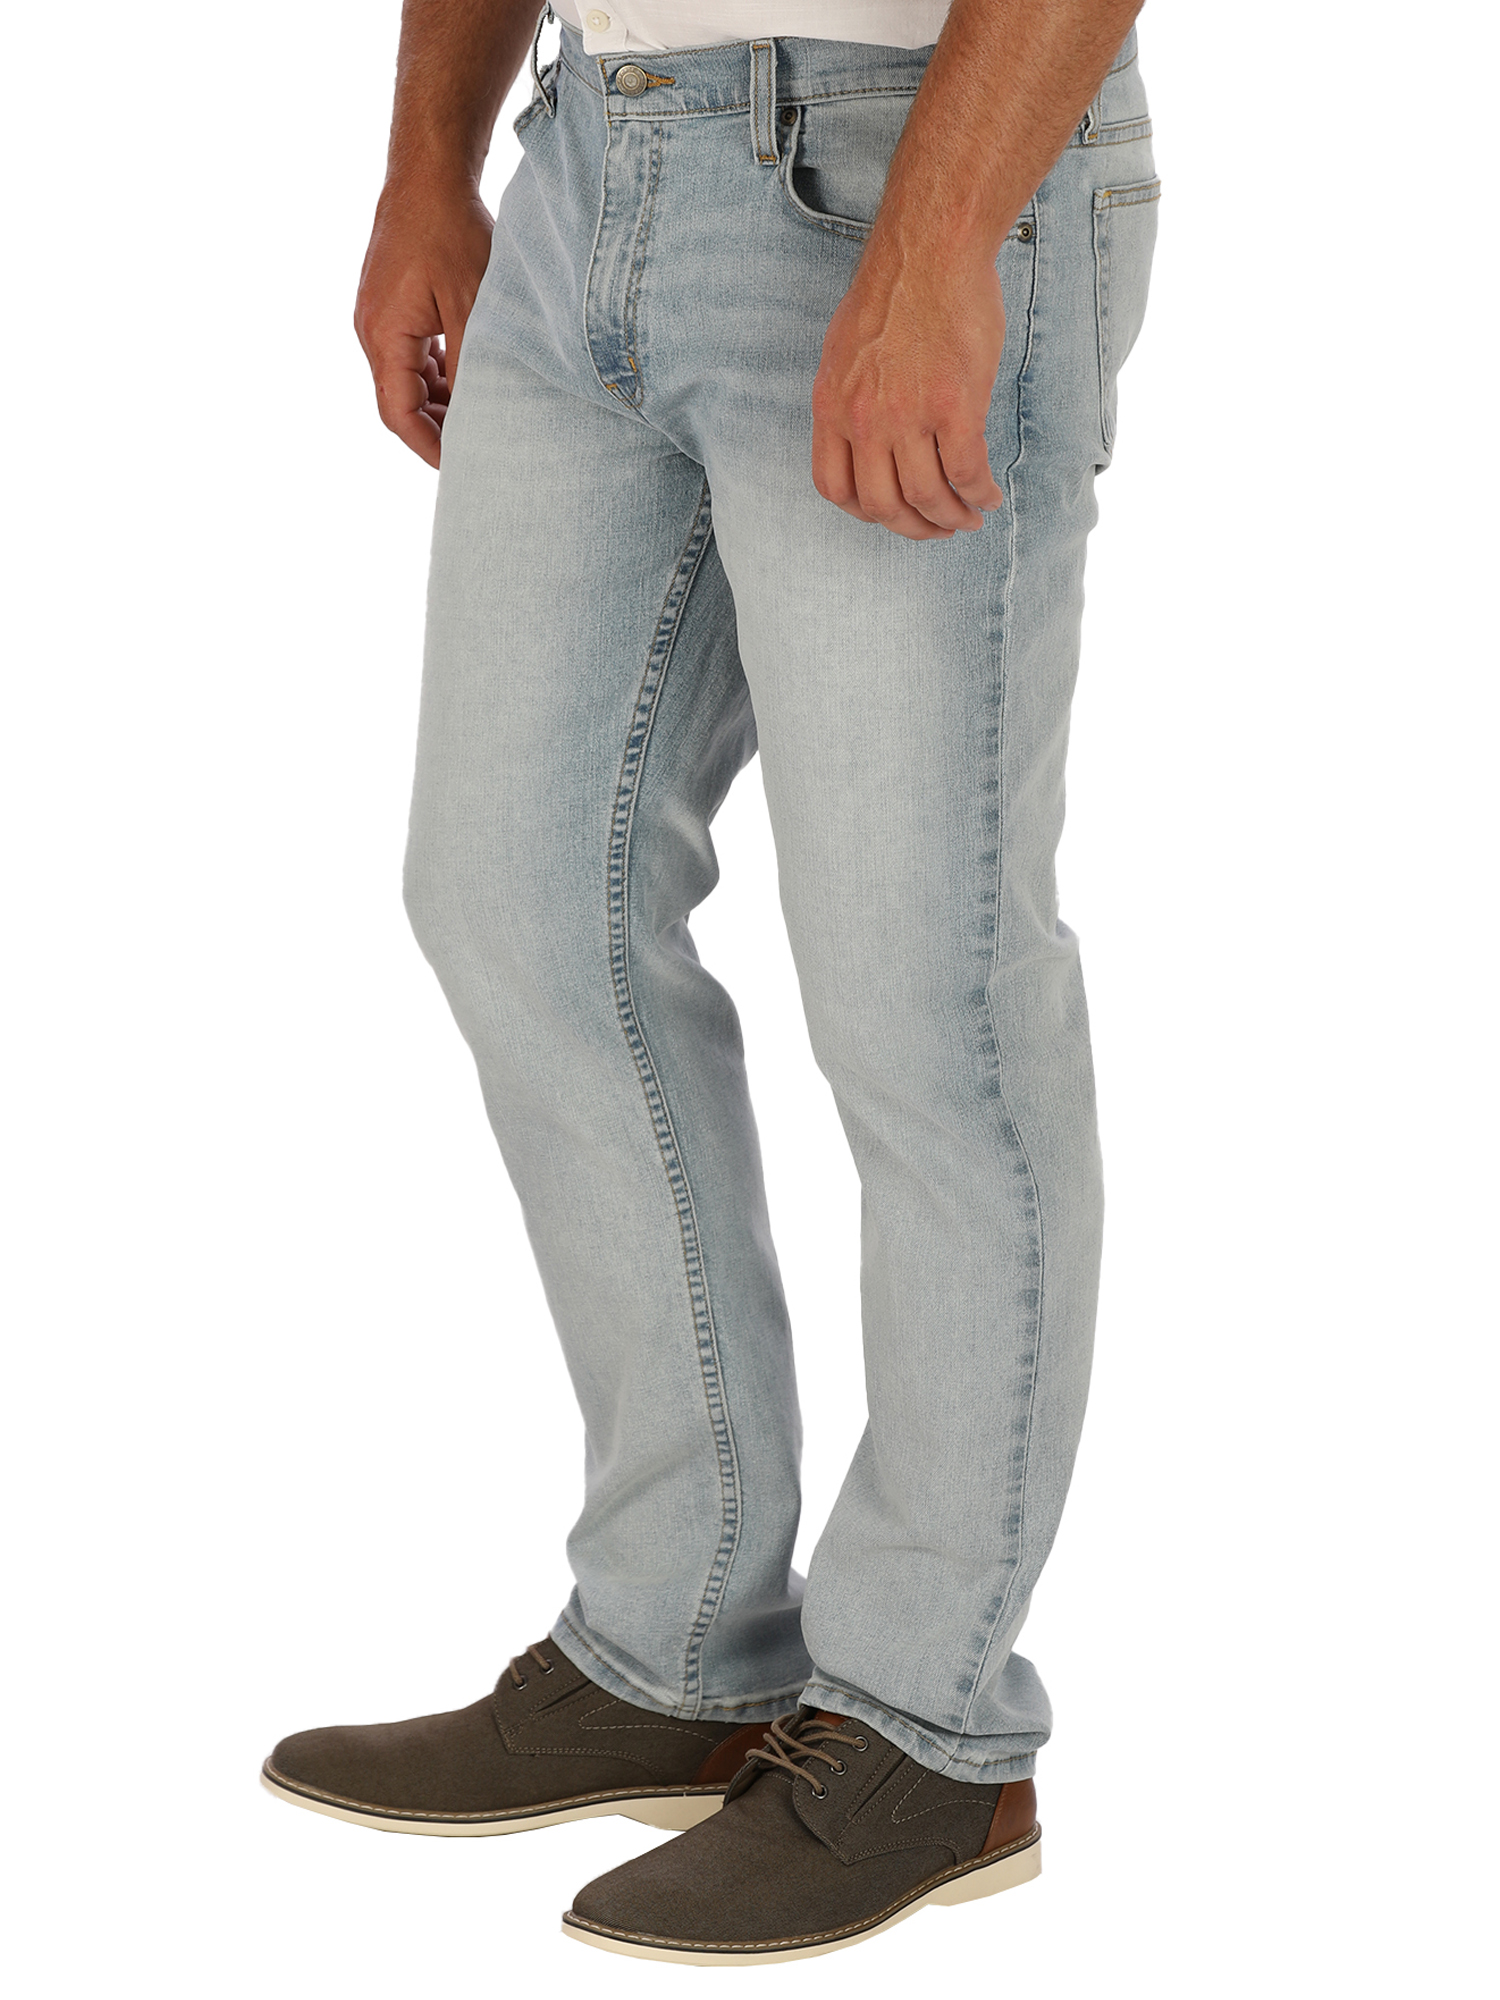 George Men's Slim Fit Jeans - image 3 of 6